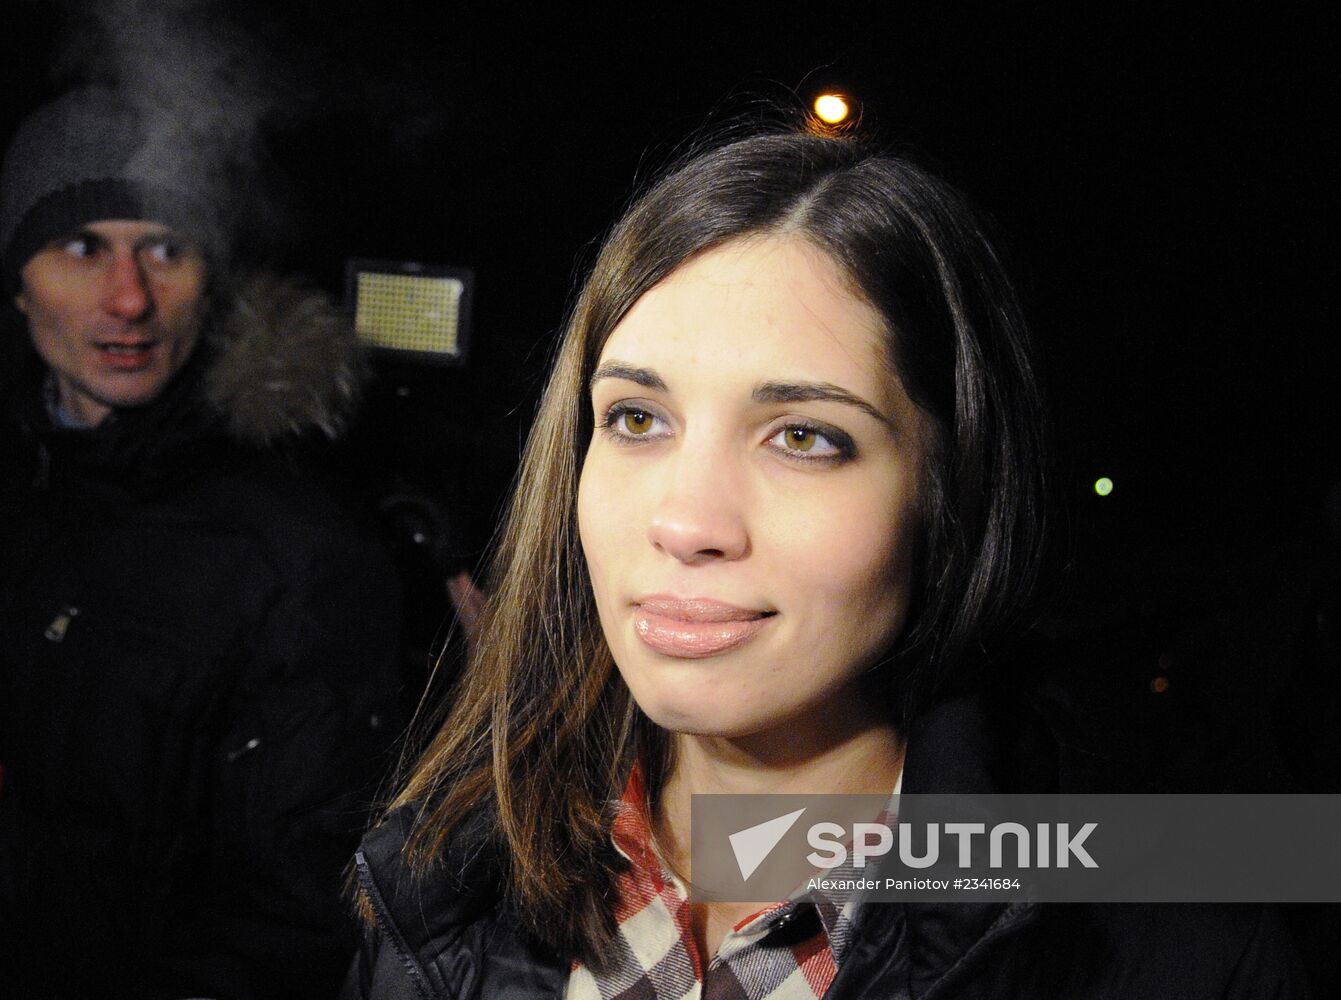 Pussy Riot's Nadezhda Tolokonnikova released from prison under amnesty